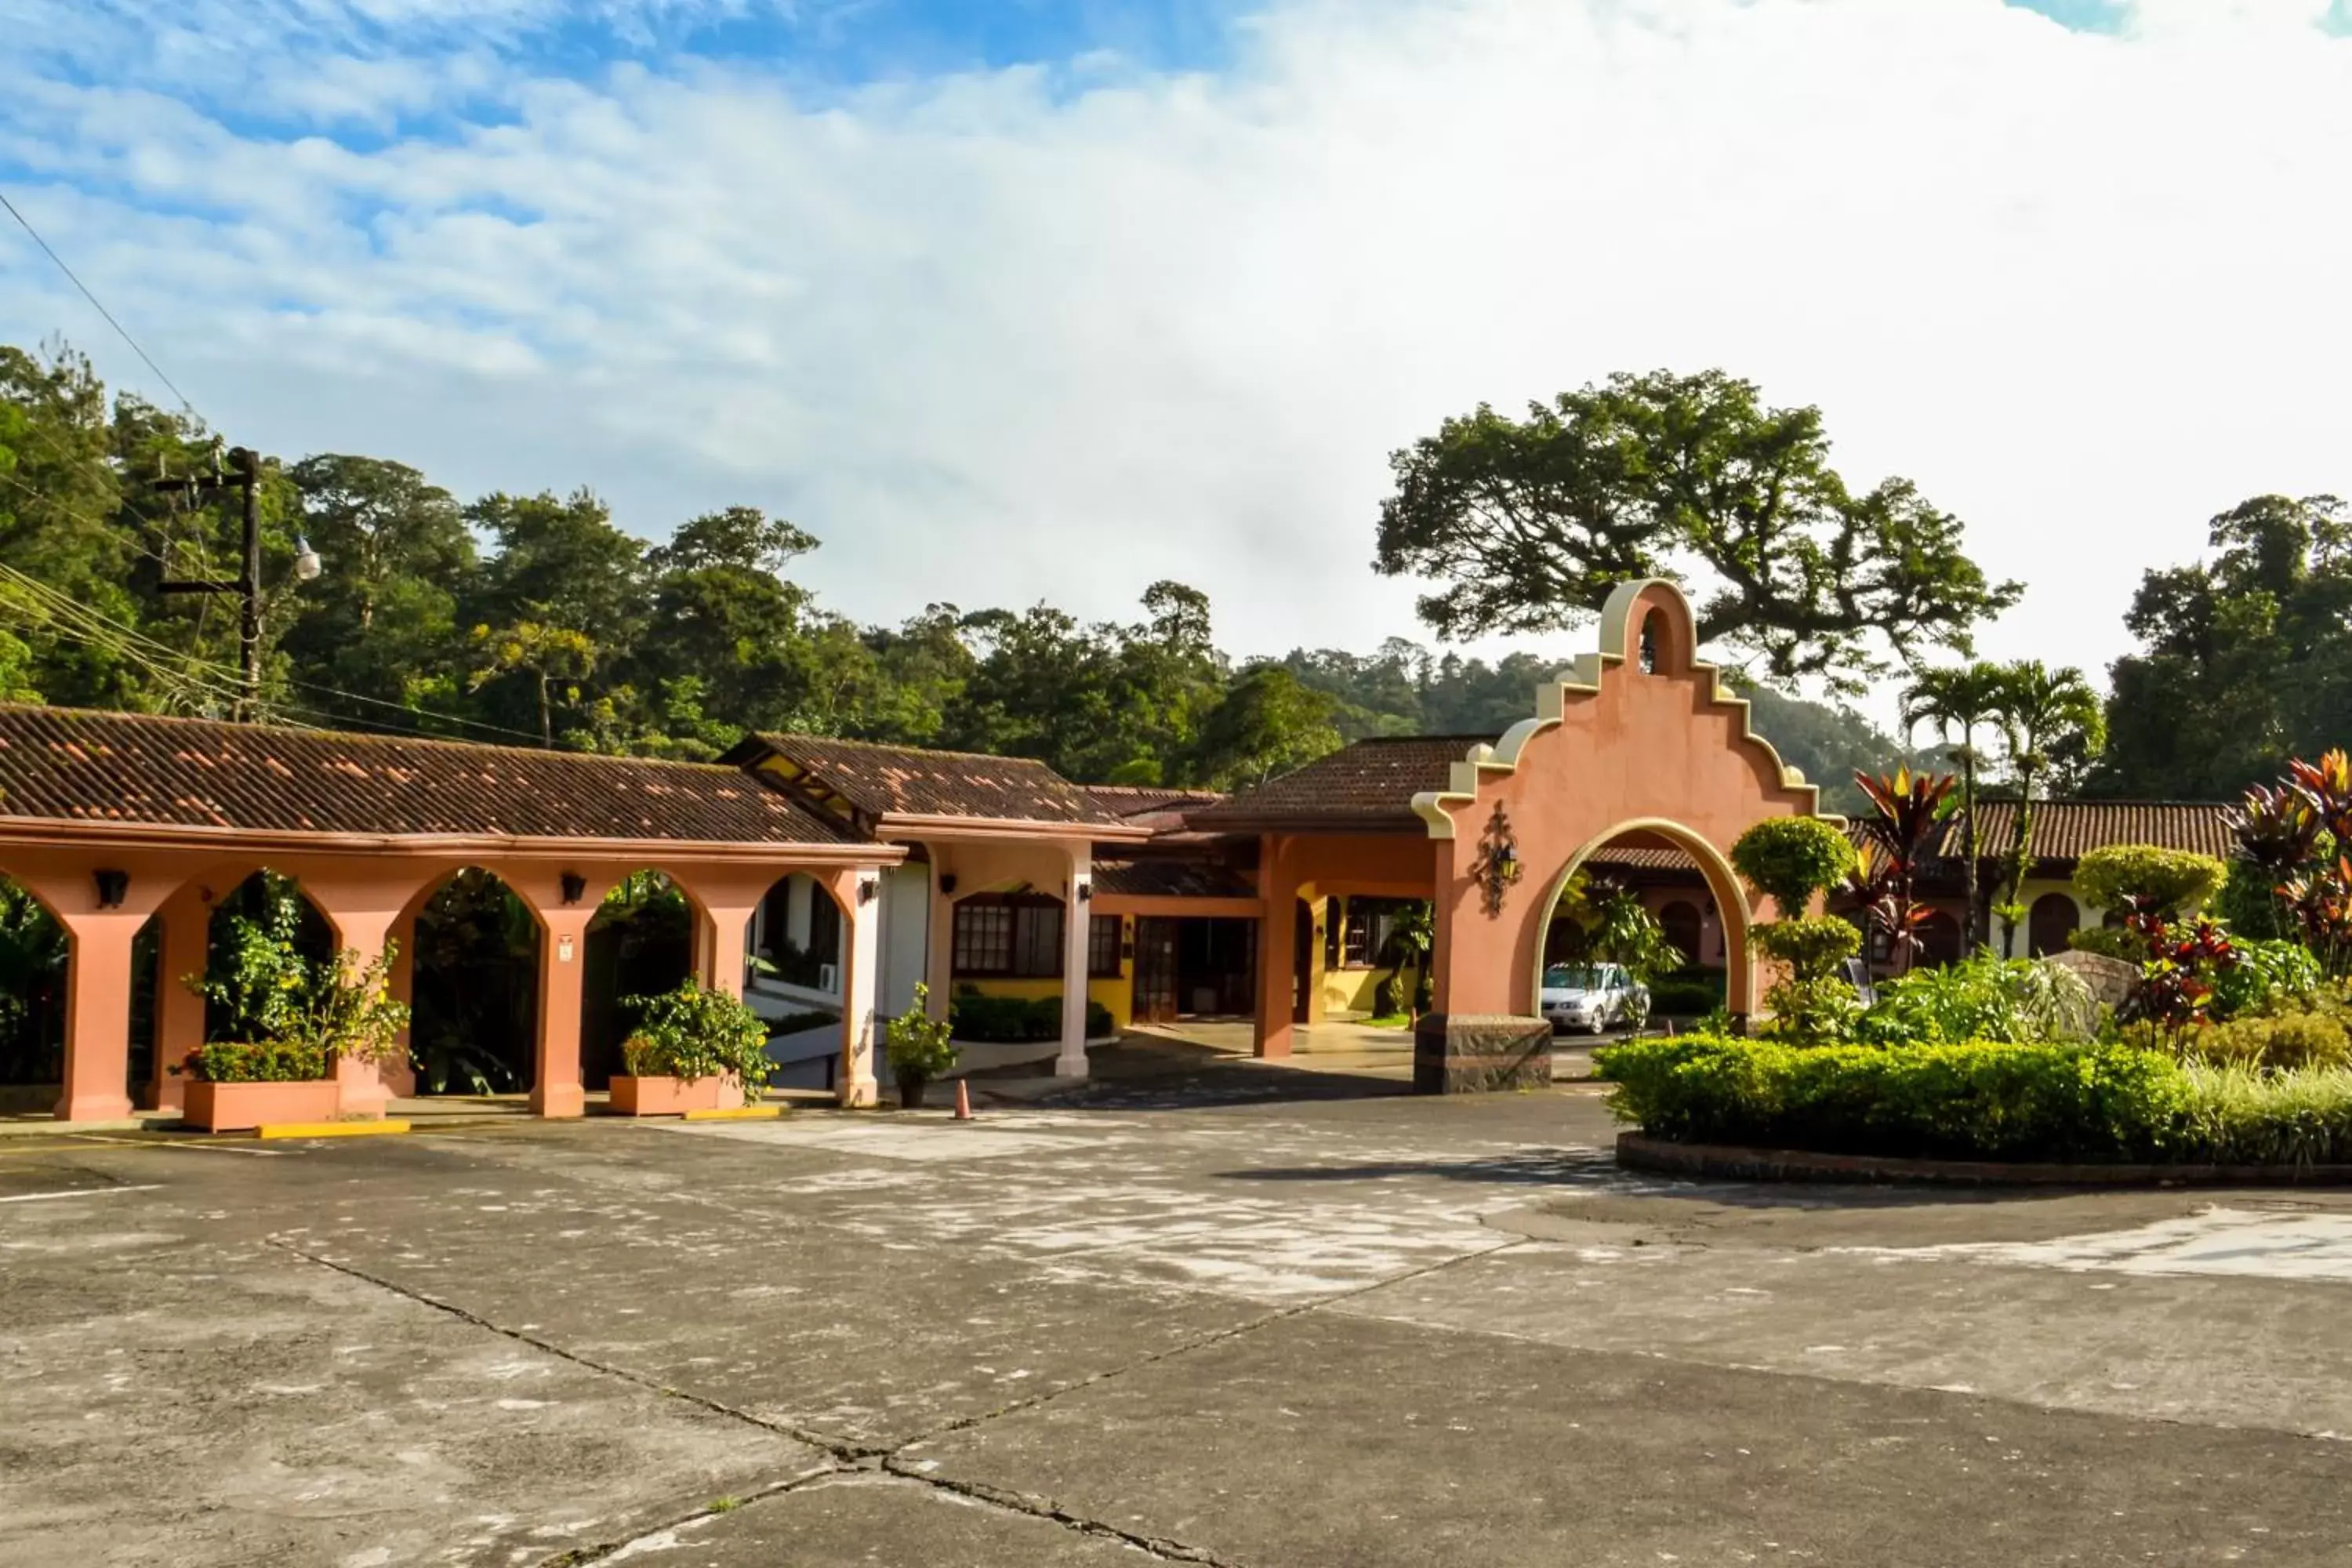 Area and facilities, Property Building in El Tucano Resort & Thermal Spa